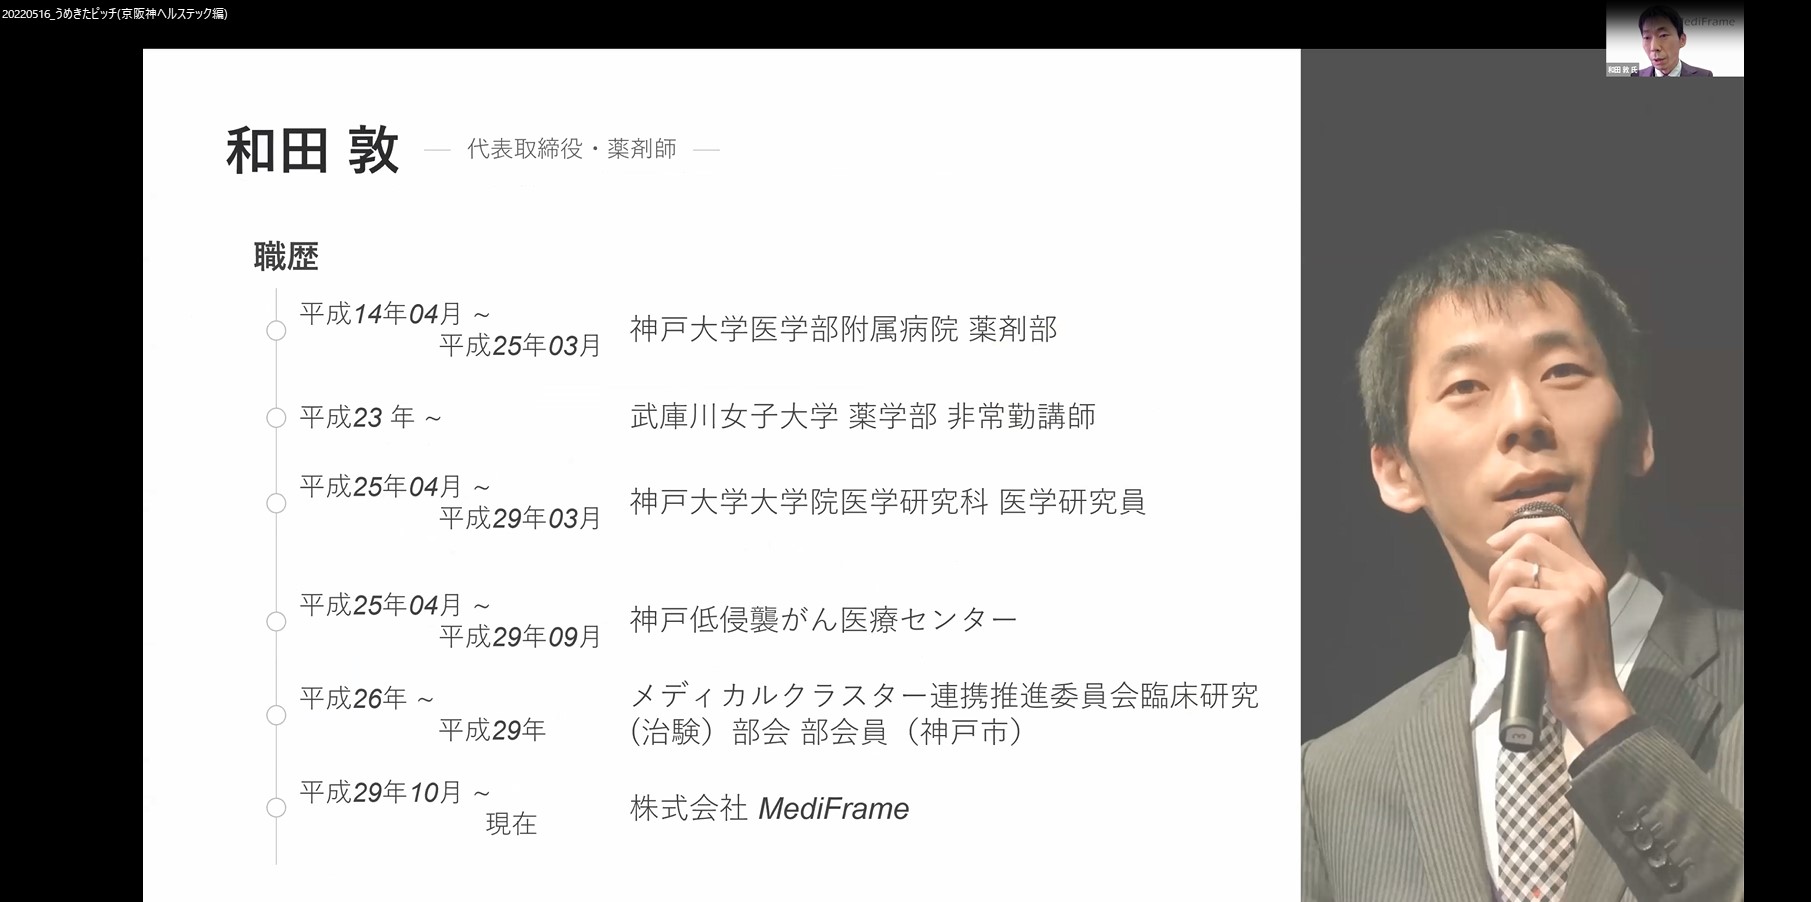 株式会社MediFrame　和田 敦 氏発表の様子